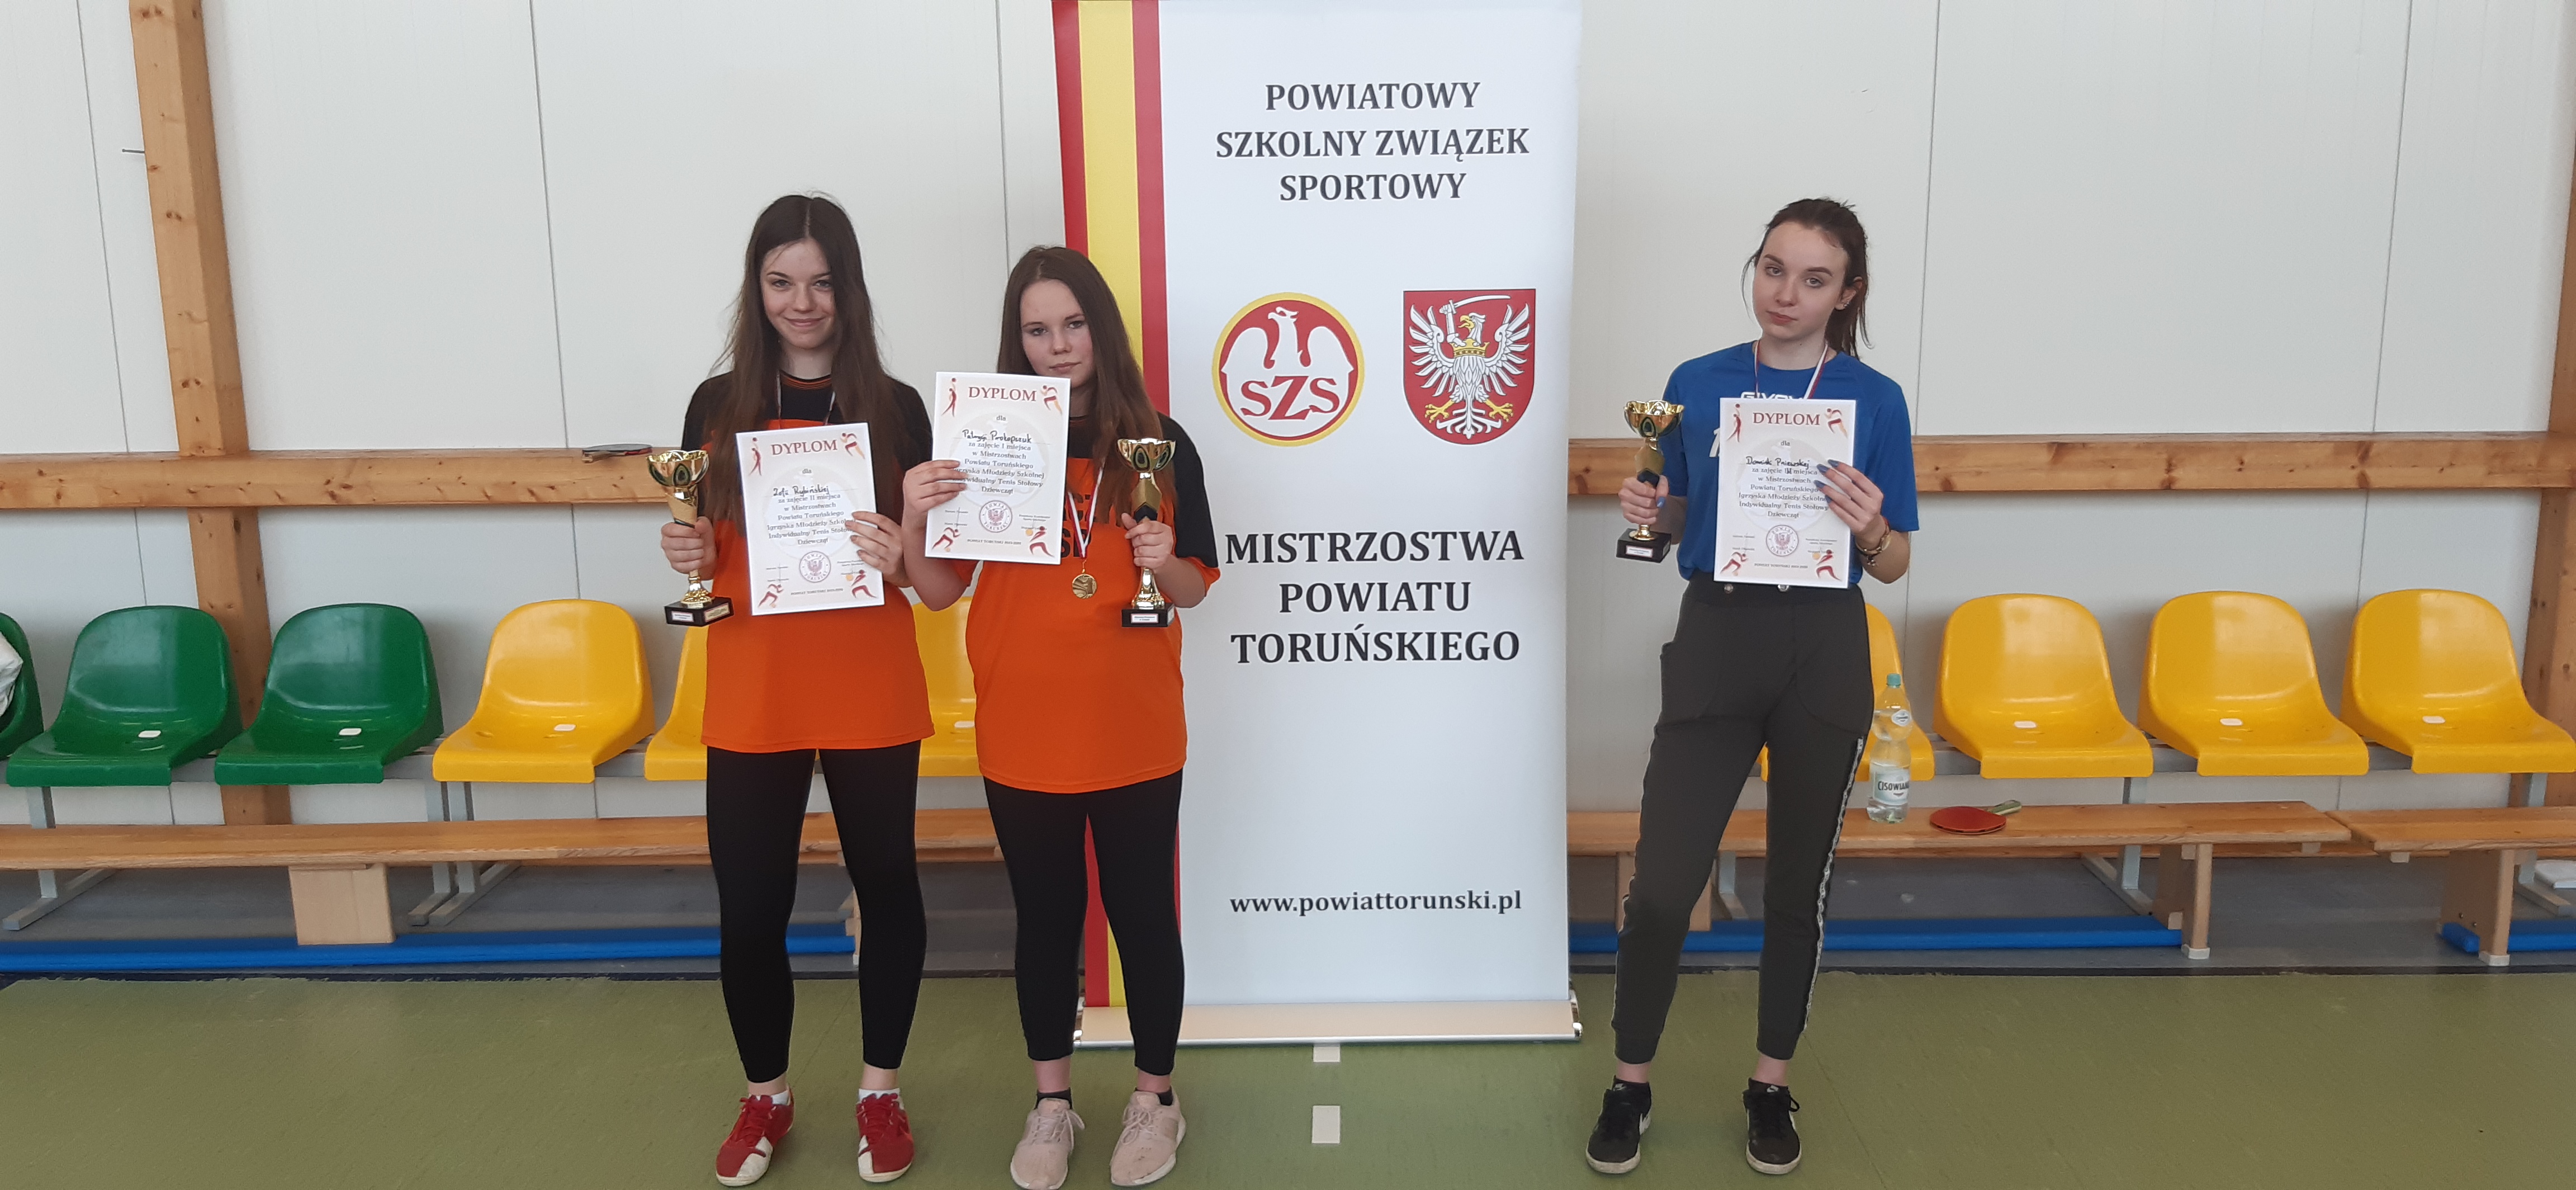 Mistrzostwa Powiatu Toruńskiego w Indywidualnym Tenisie Stołowym Igrzyska Młodzieży Szkolnej, Świerczynki 2020